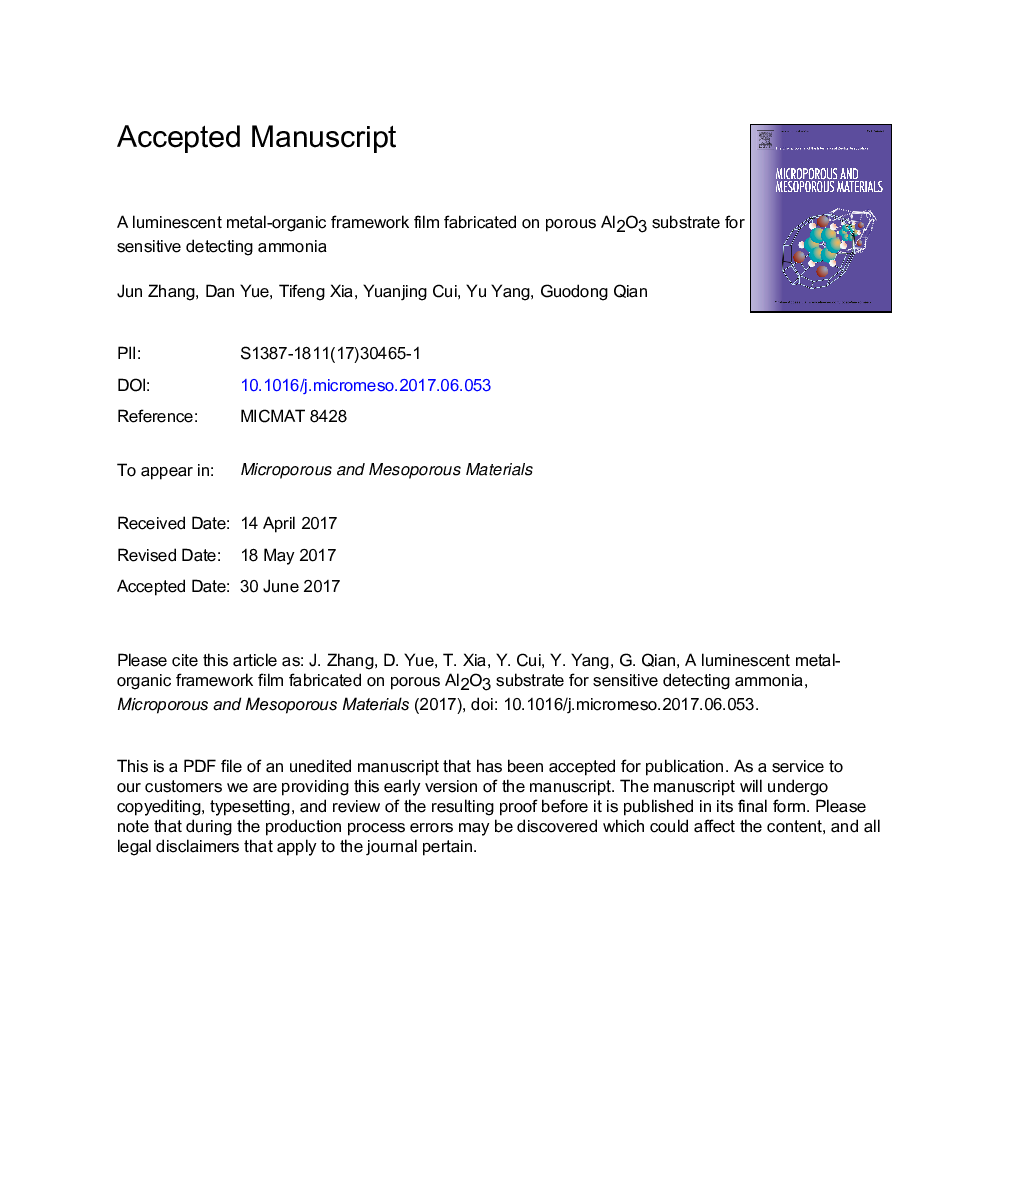 یک فونداسیون آلومینیوم فلورسنت آلومینیوم ساخته شده بر روی متخلخل آلومینیوم برای تشخیص حساس آمونیاک 